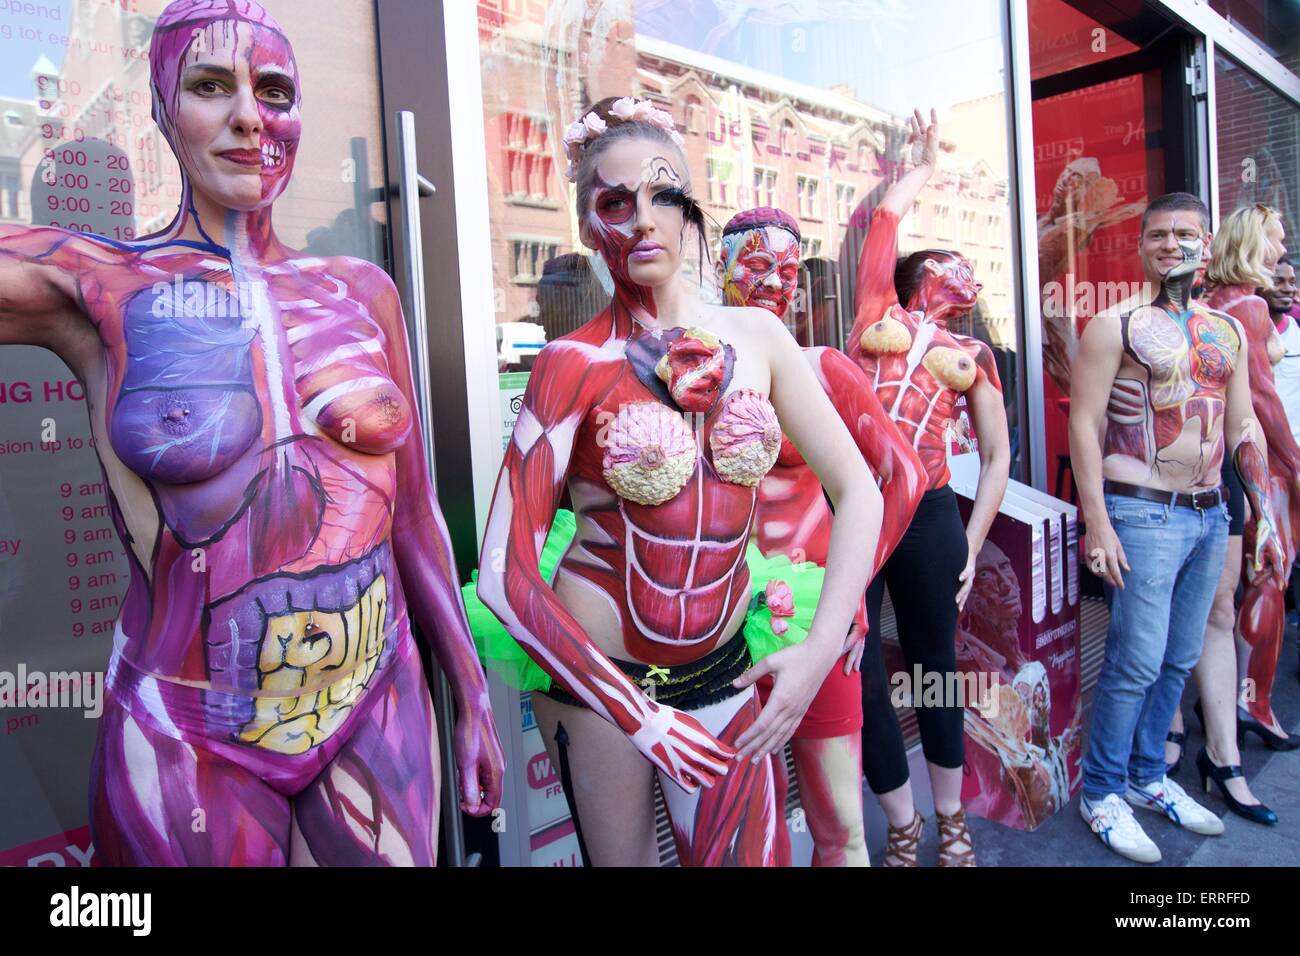 Amsterdam, Pays-Bas. 7 juin, 2015. Les modèles posent body painting pendant les "sous la peau", une exposition de peintures, corps anatomique à Dam Square dans le centre-ville d'Amsterdam, Pays-Bas, le 7 juin 2015. © Sylvia Lederer/Xinhua/Alamy Live News Banque D'Images